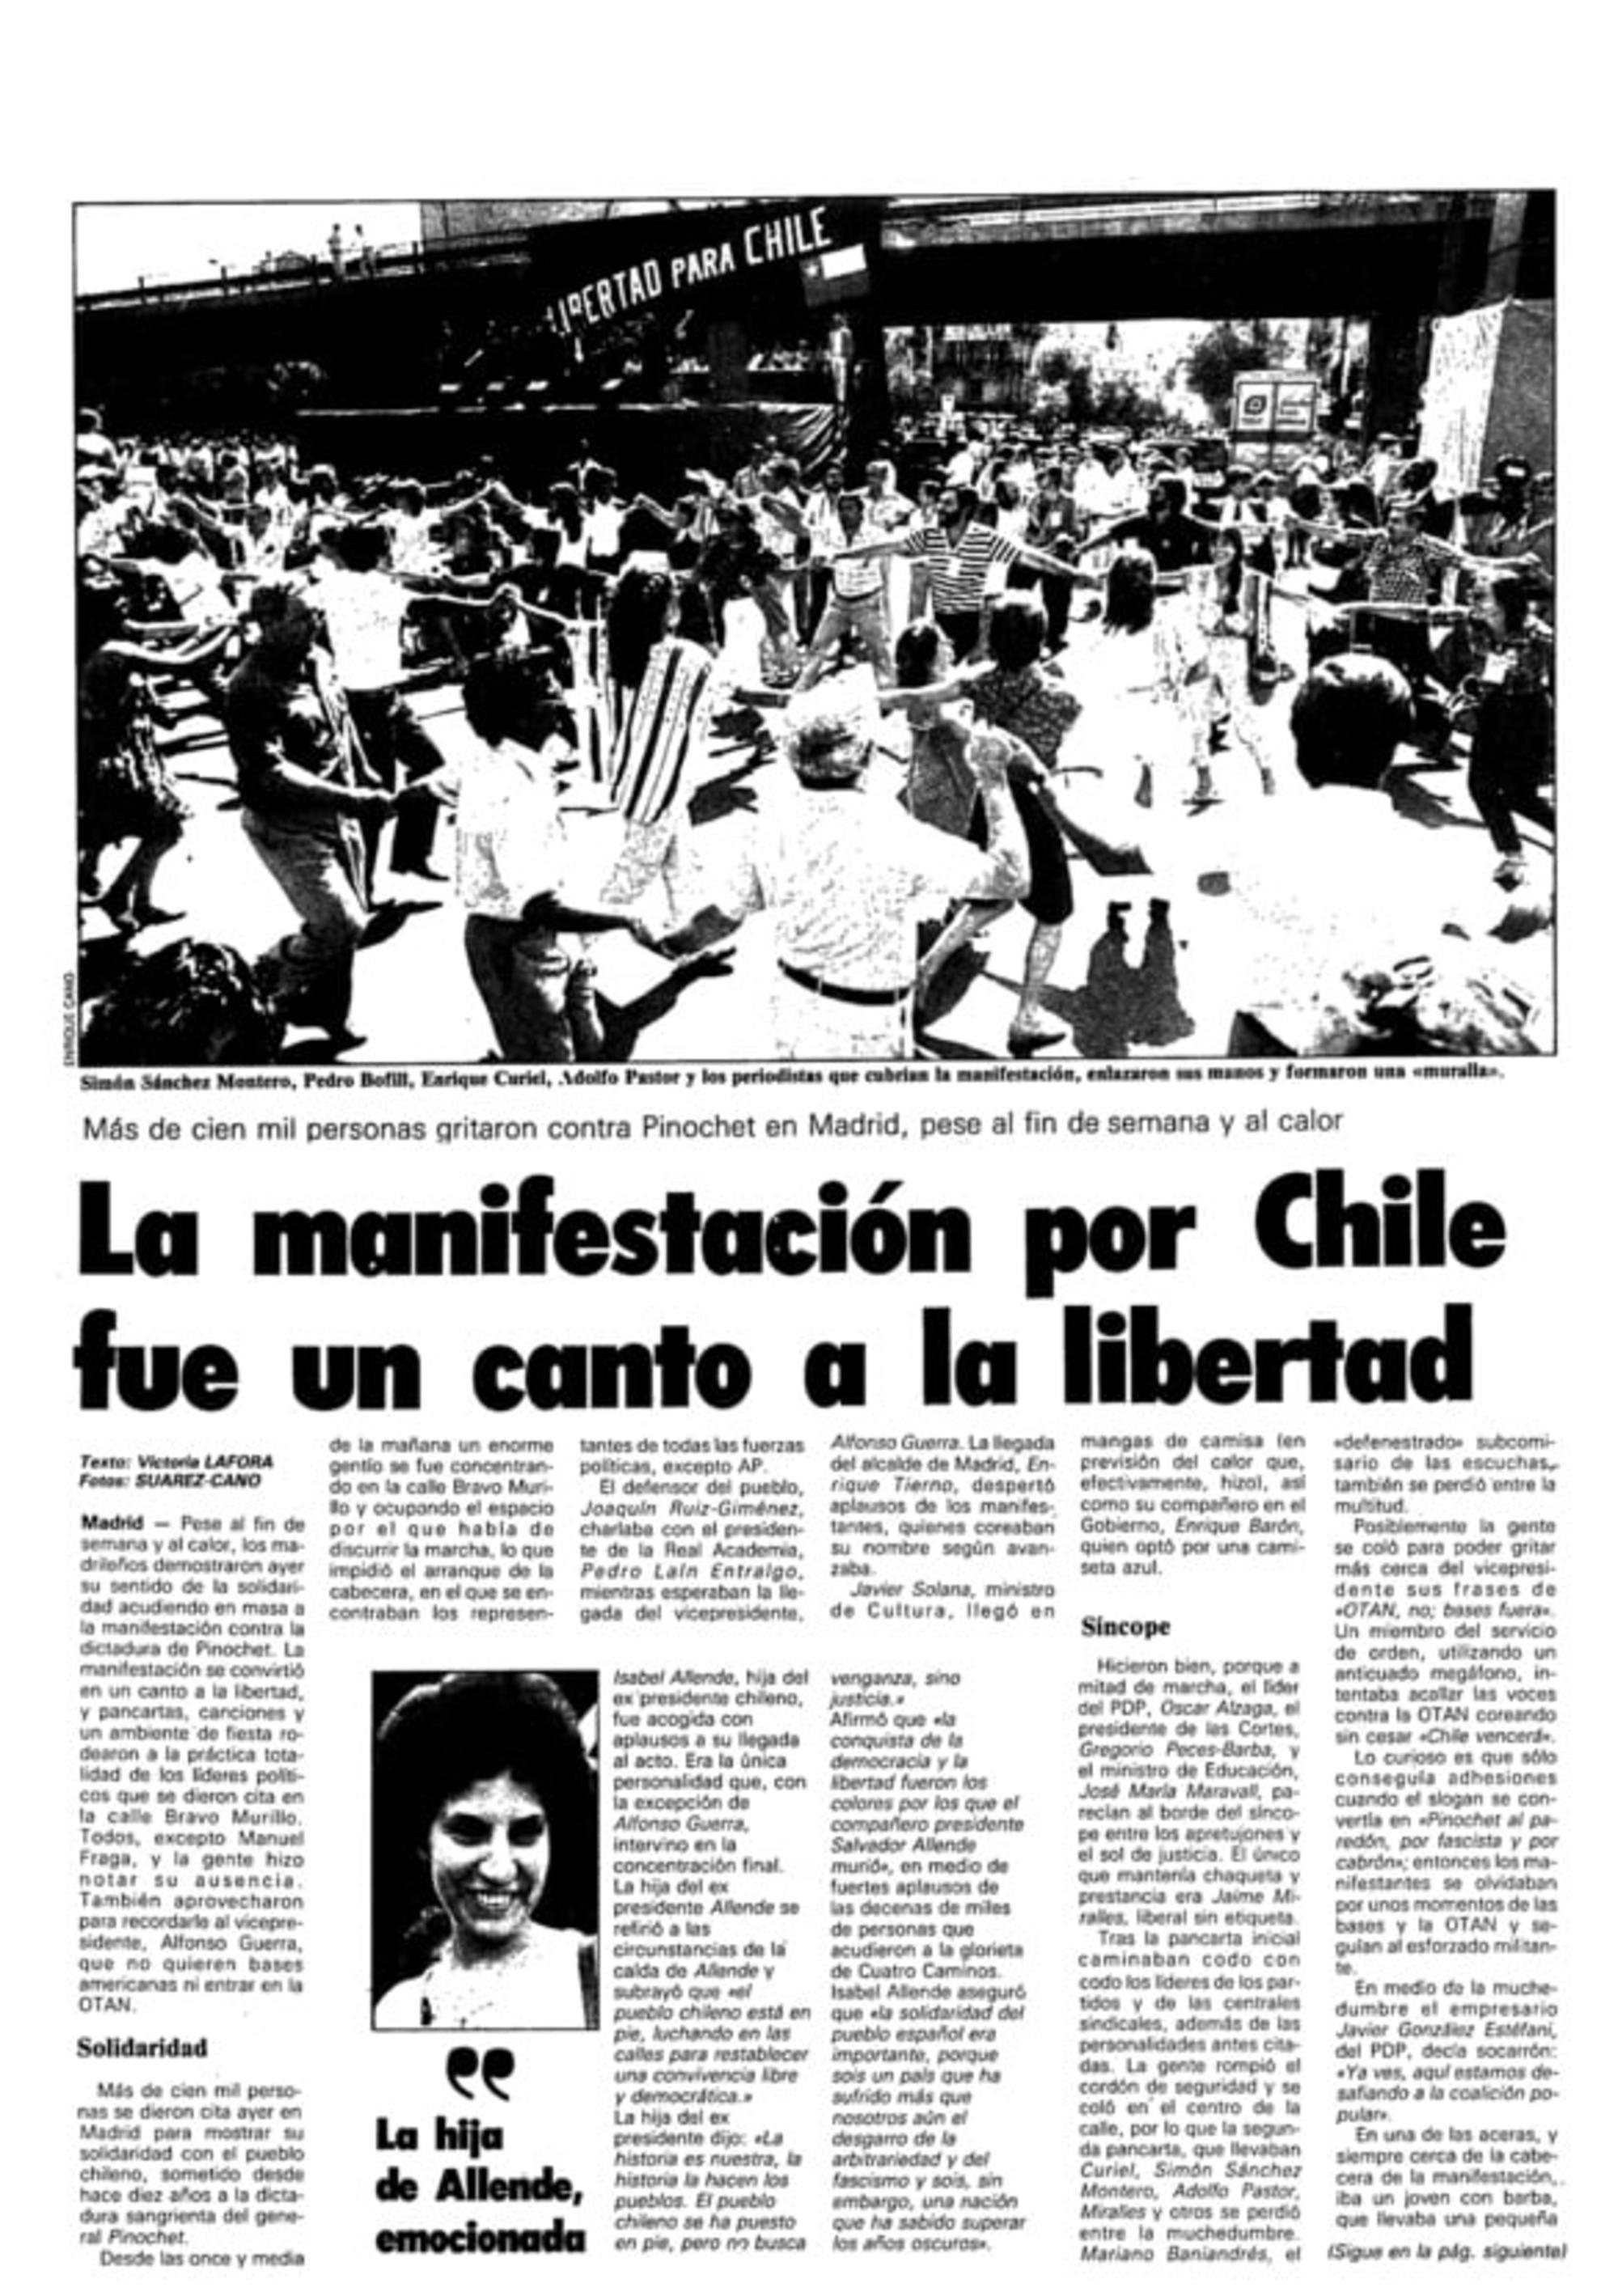 El 16 de septiembre de 1986, cerca de 100.000 personas se manifestaron en Madrid por la democracia y los derechos humanos en Chile.